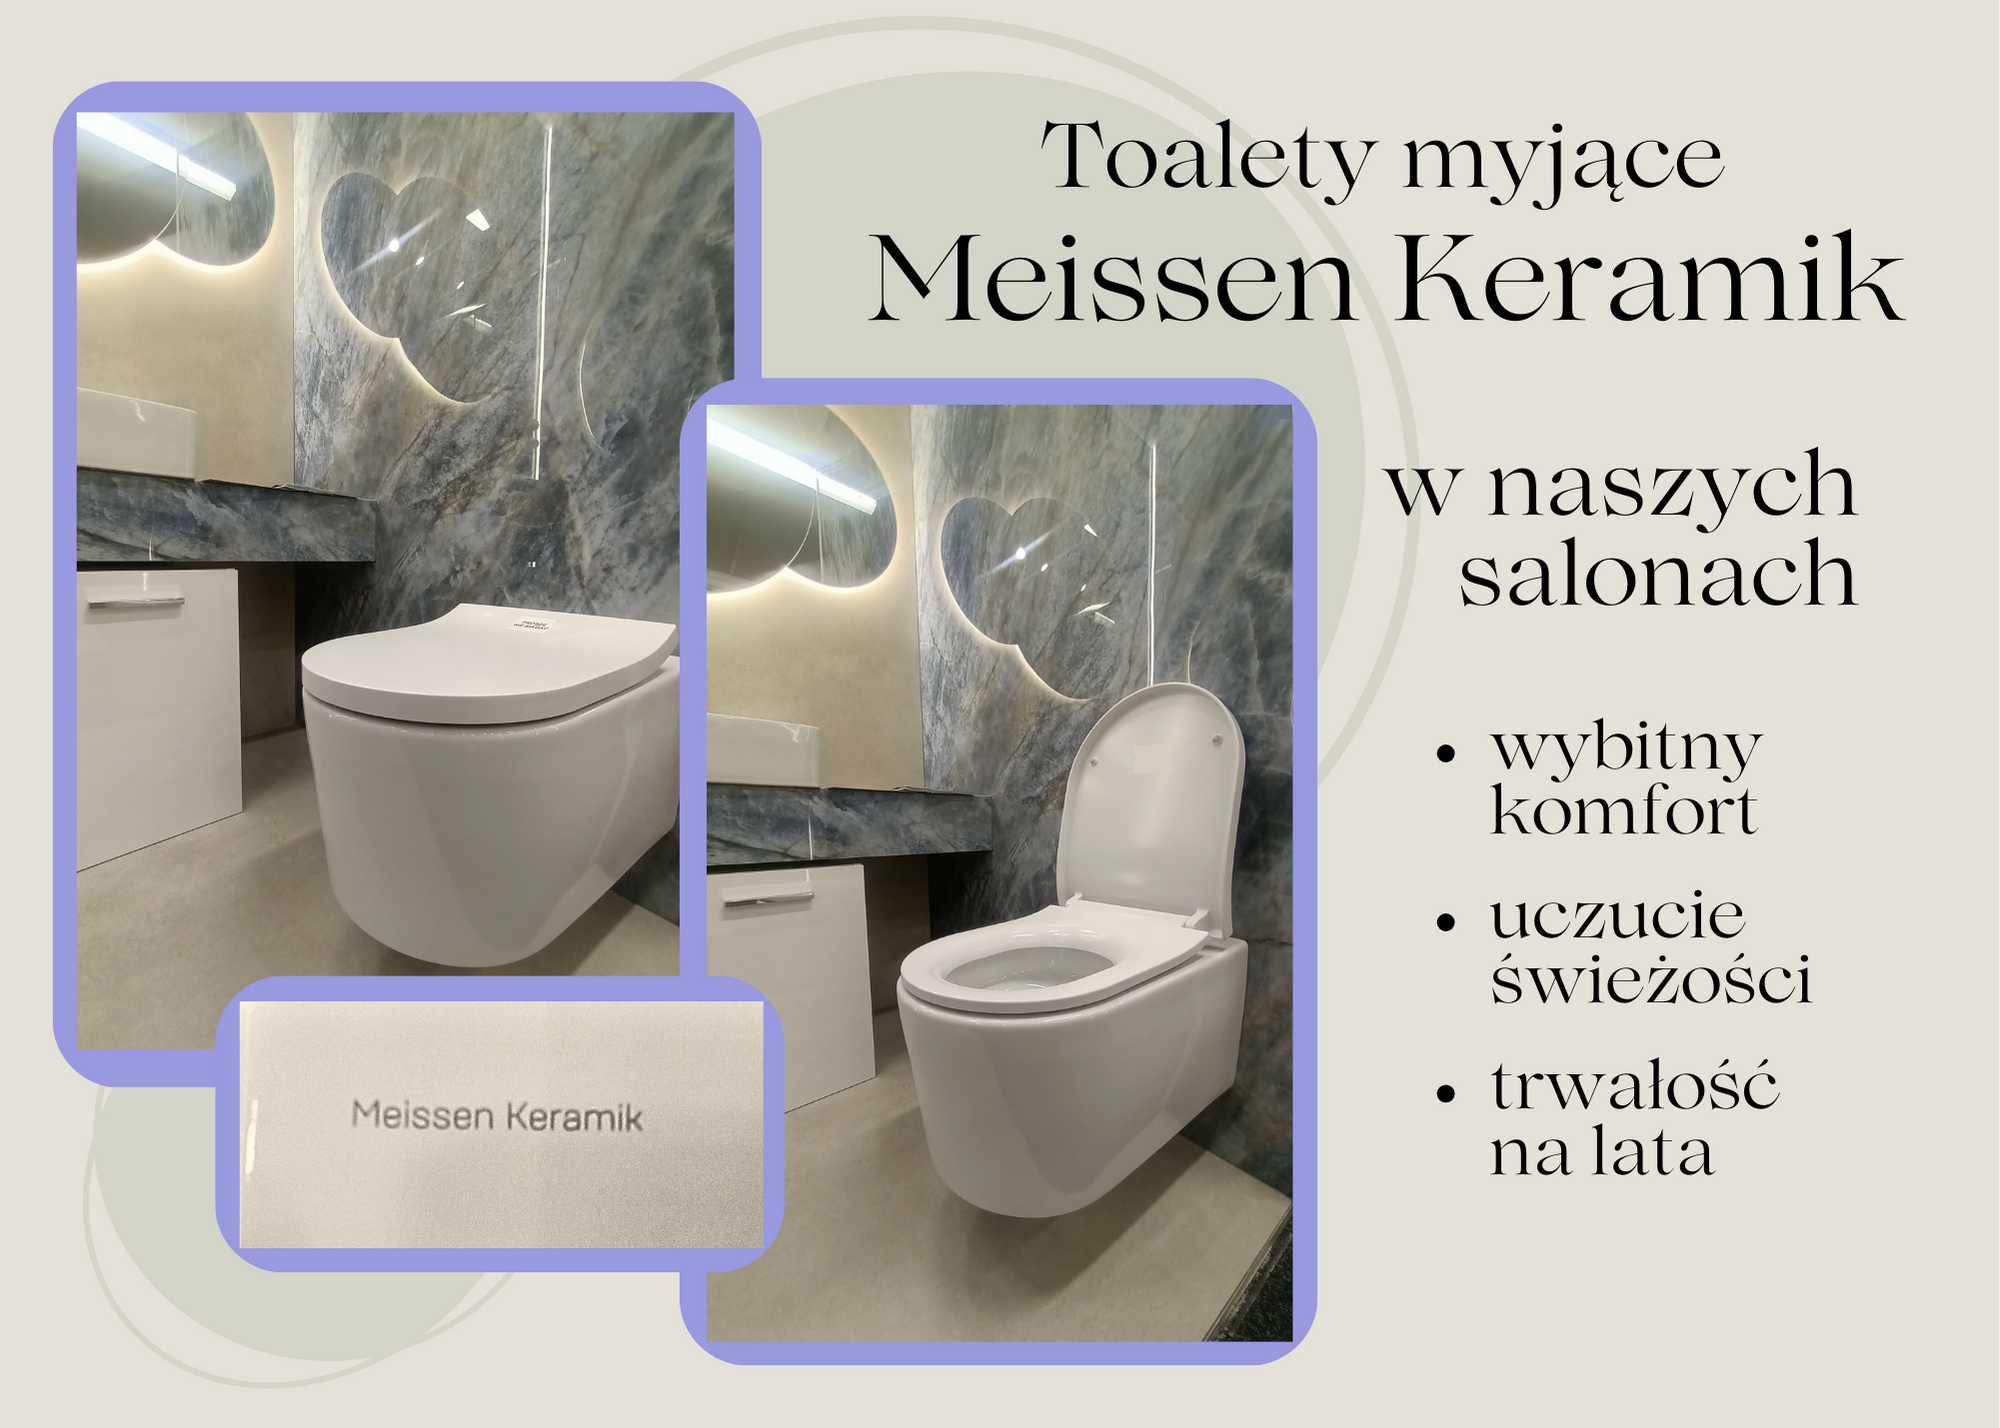 Poczuj luksus i komfort: Toalety myjące Meissen Keramik w naszych salonach